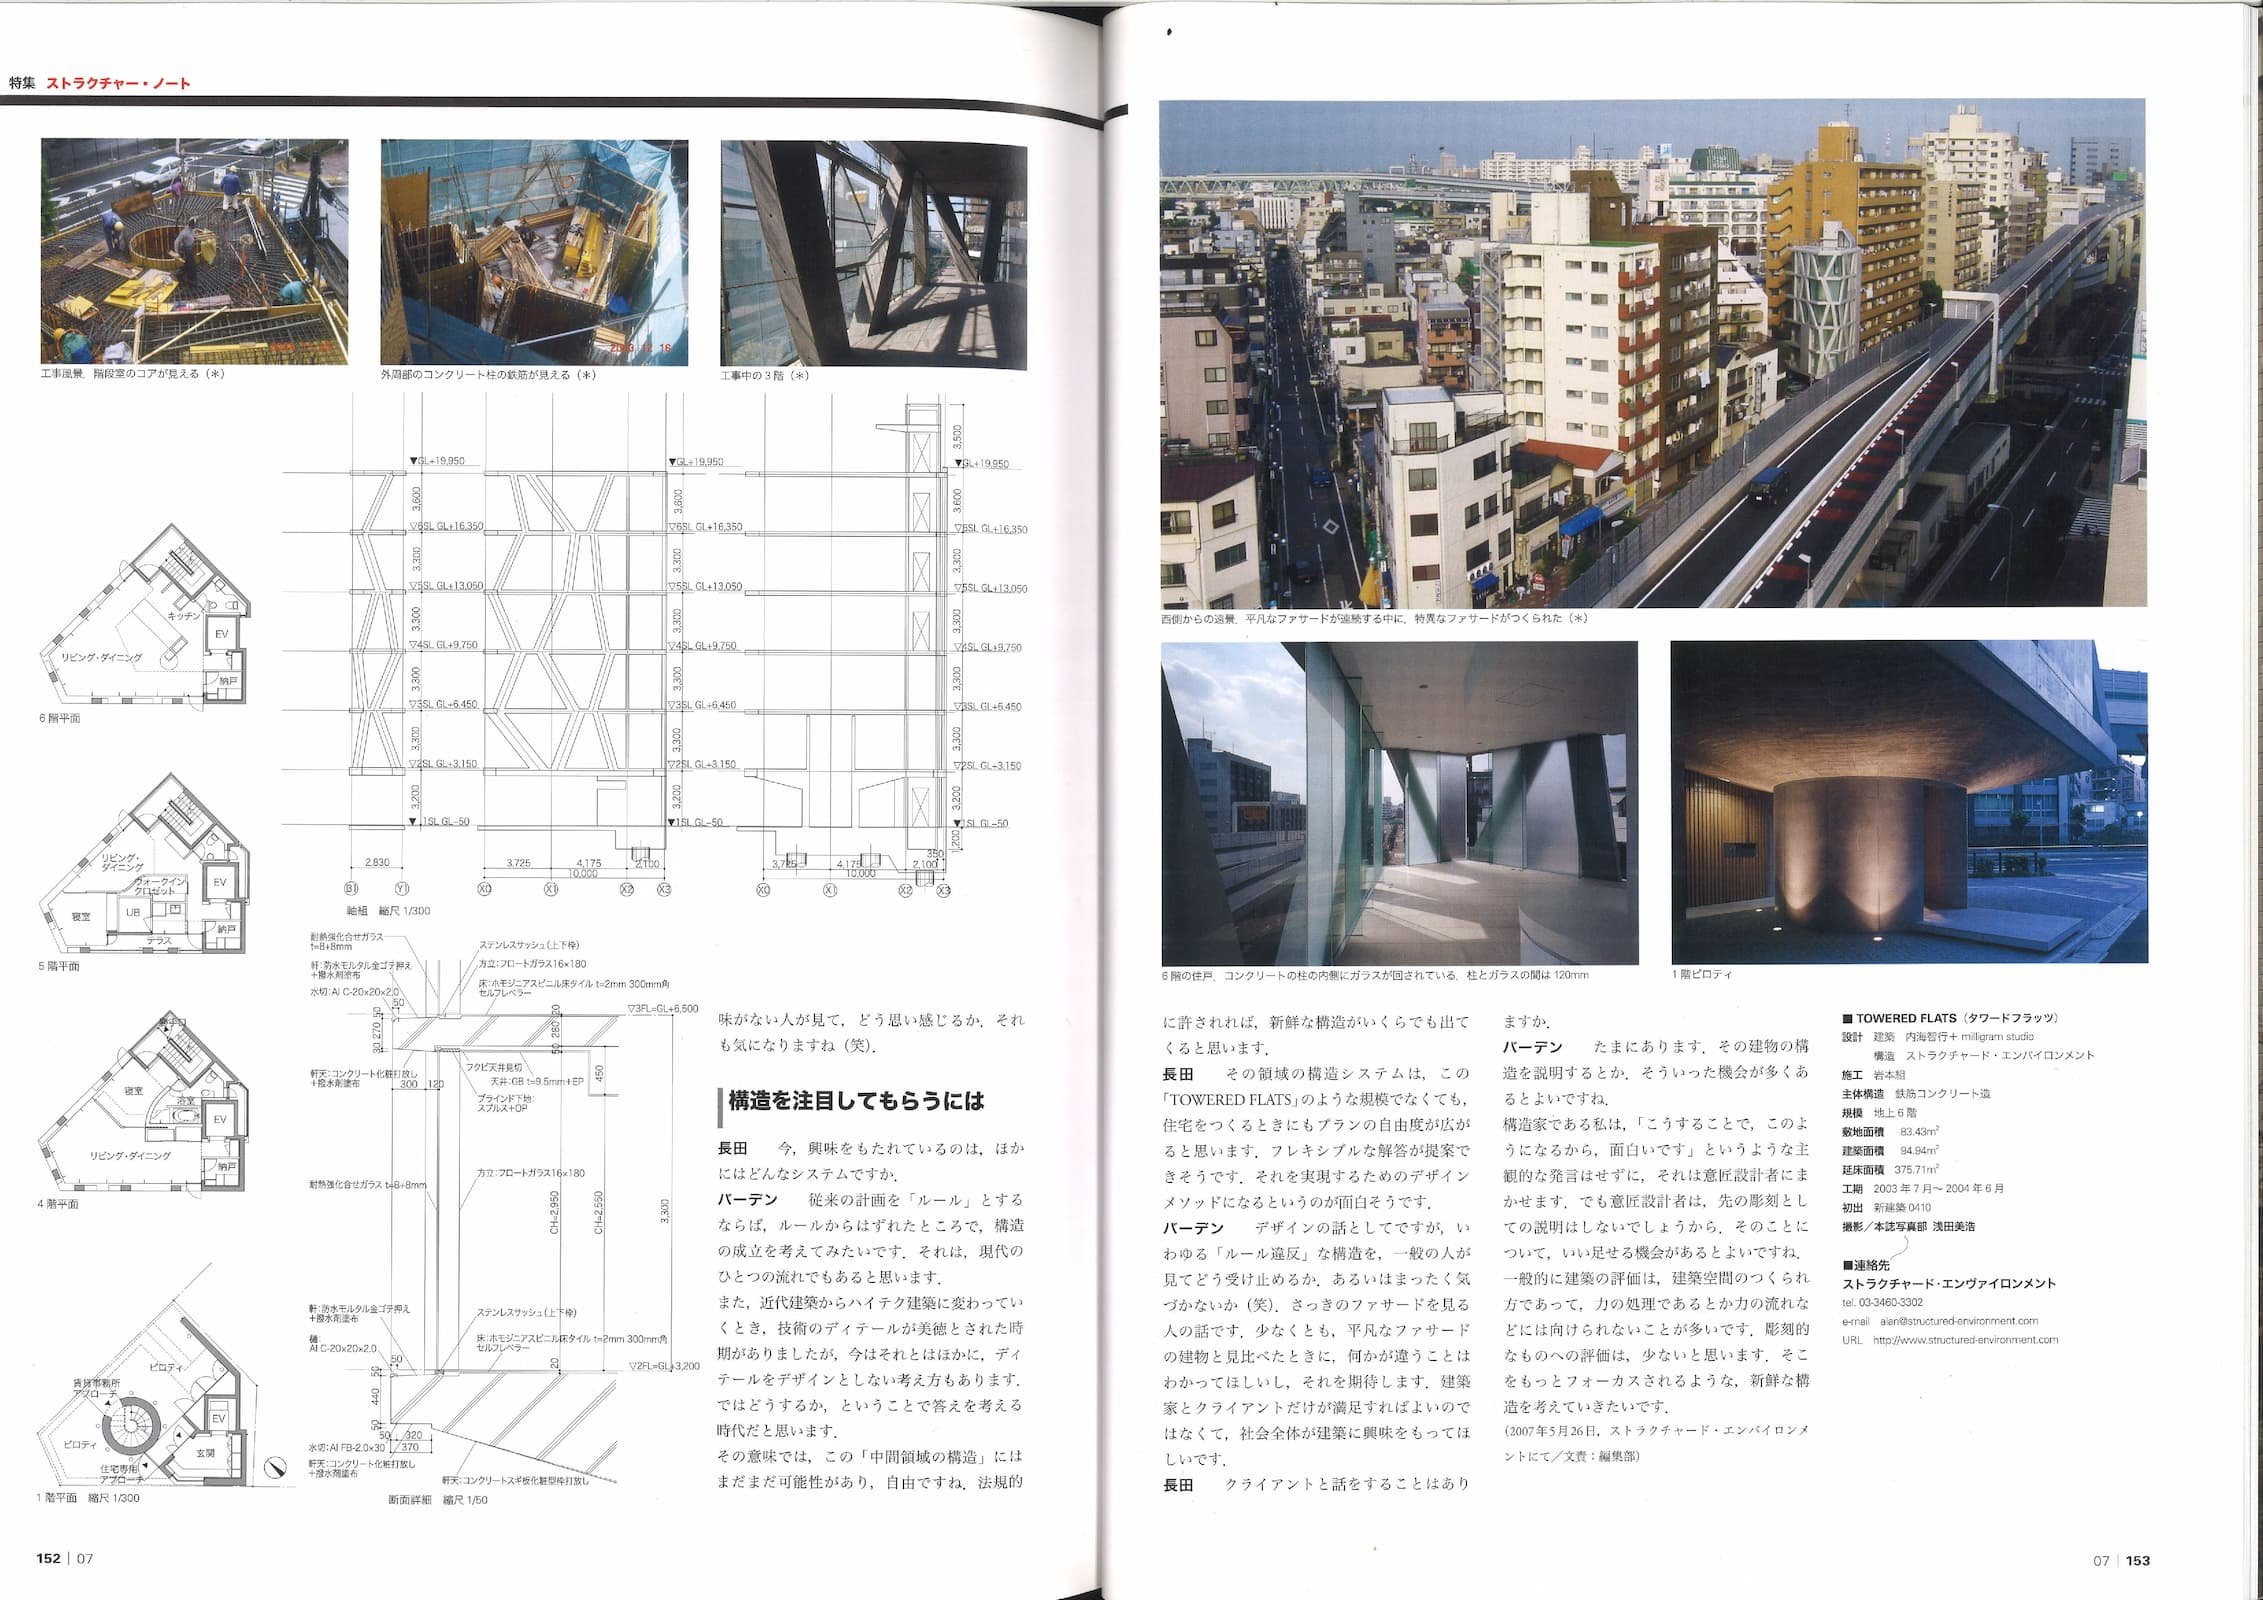 住宅特集 - Housing Special Feature 255 - Towered Flats_Page_3.jpg